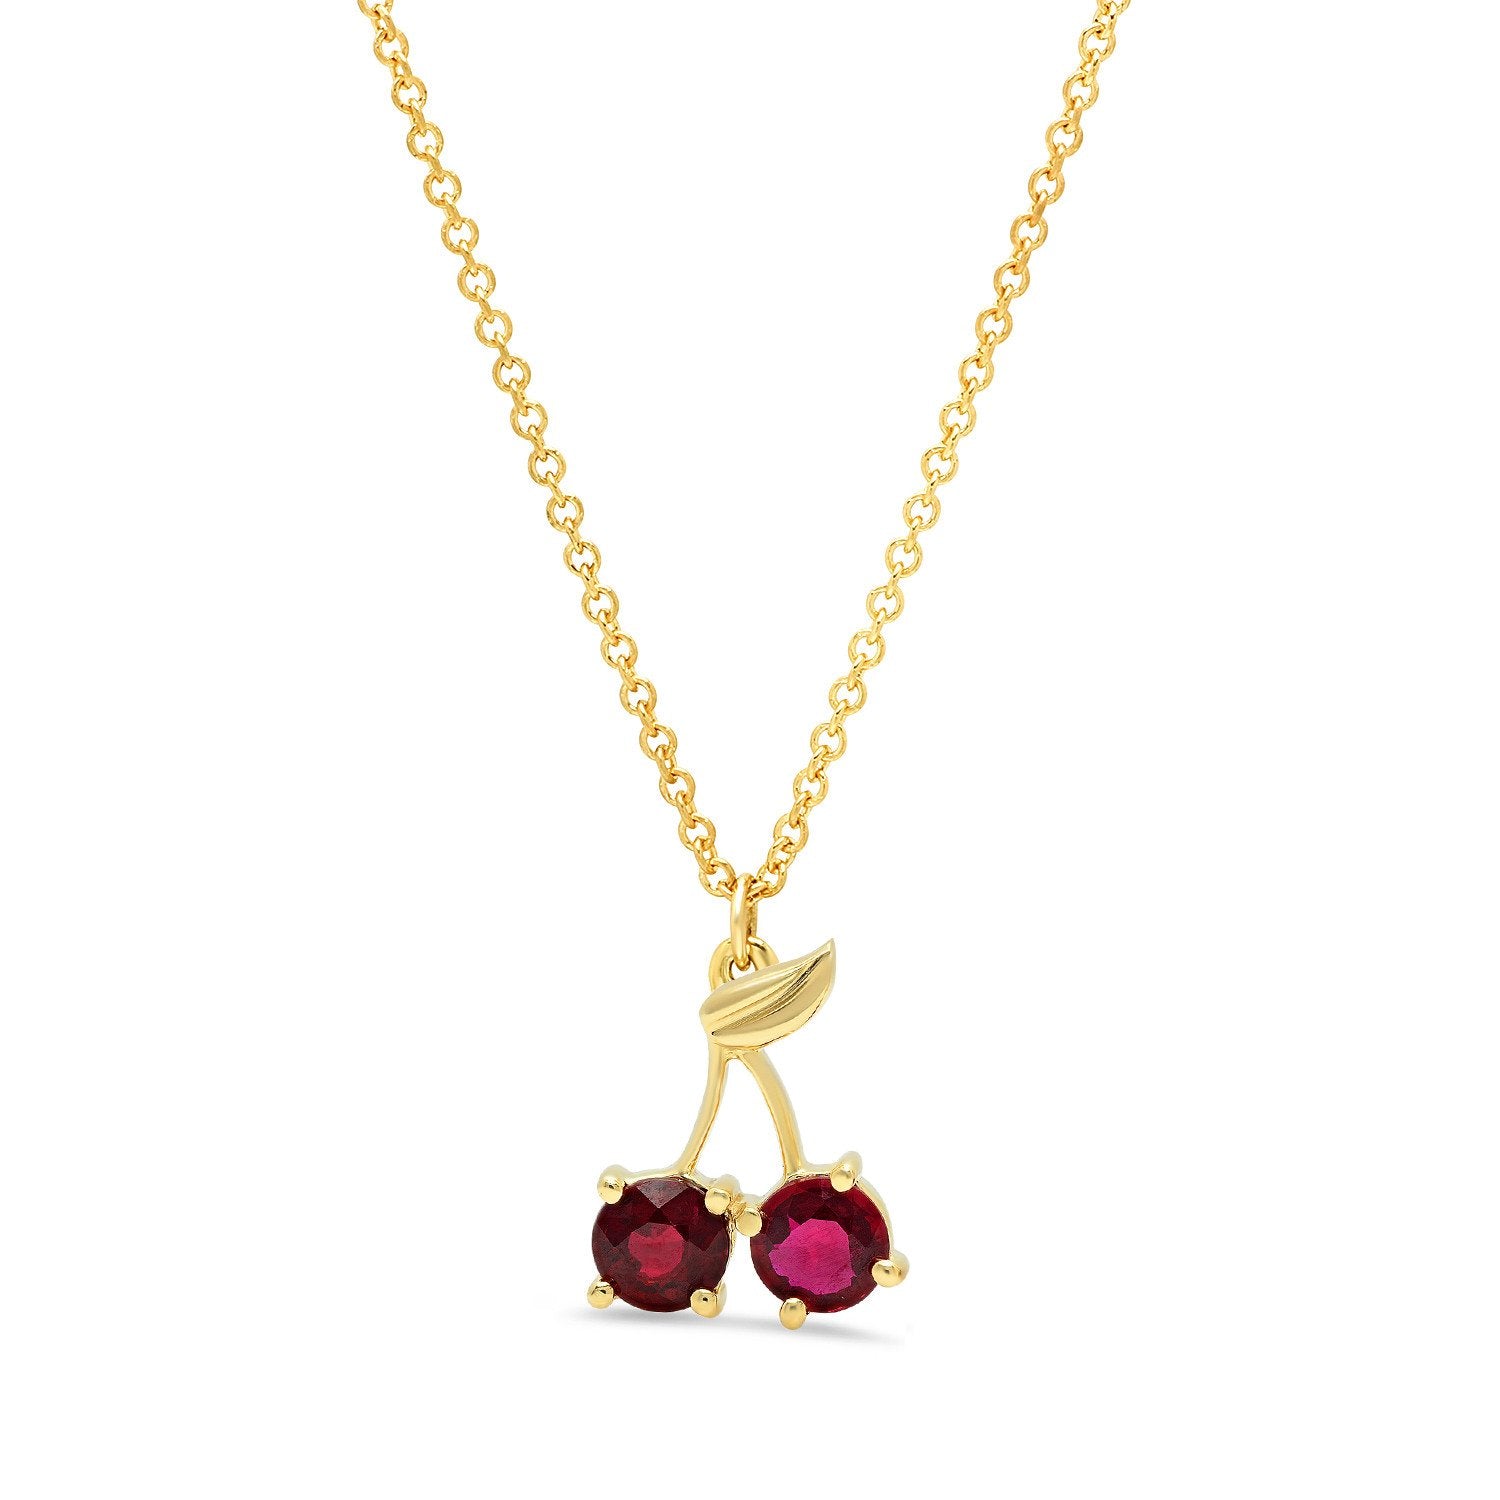 Cherry Charm Necklace W/ Rubies